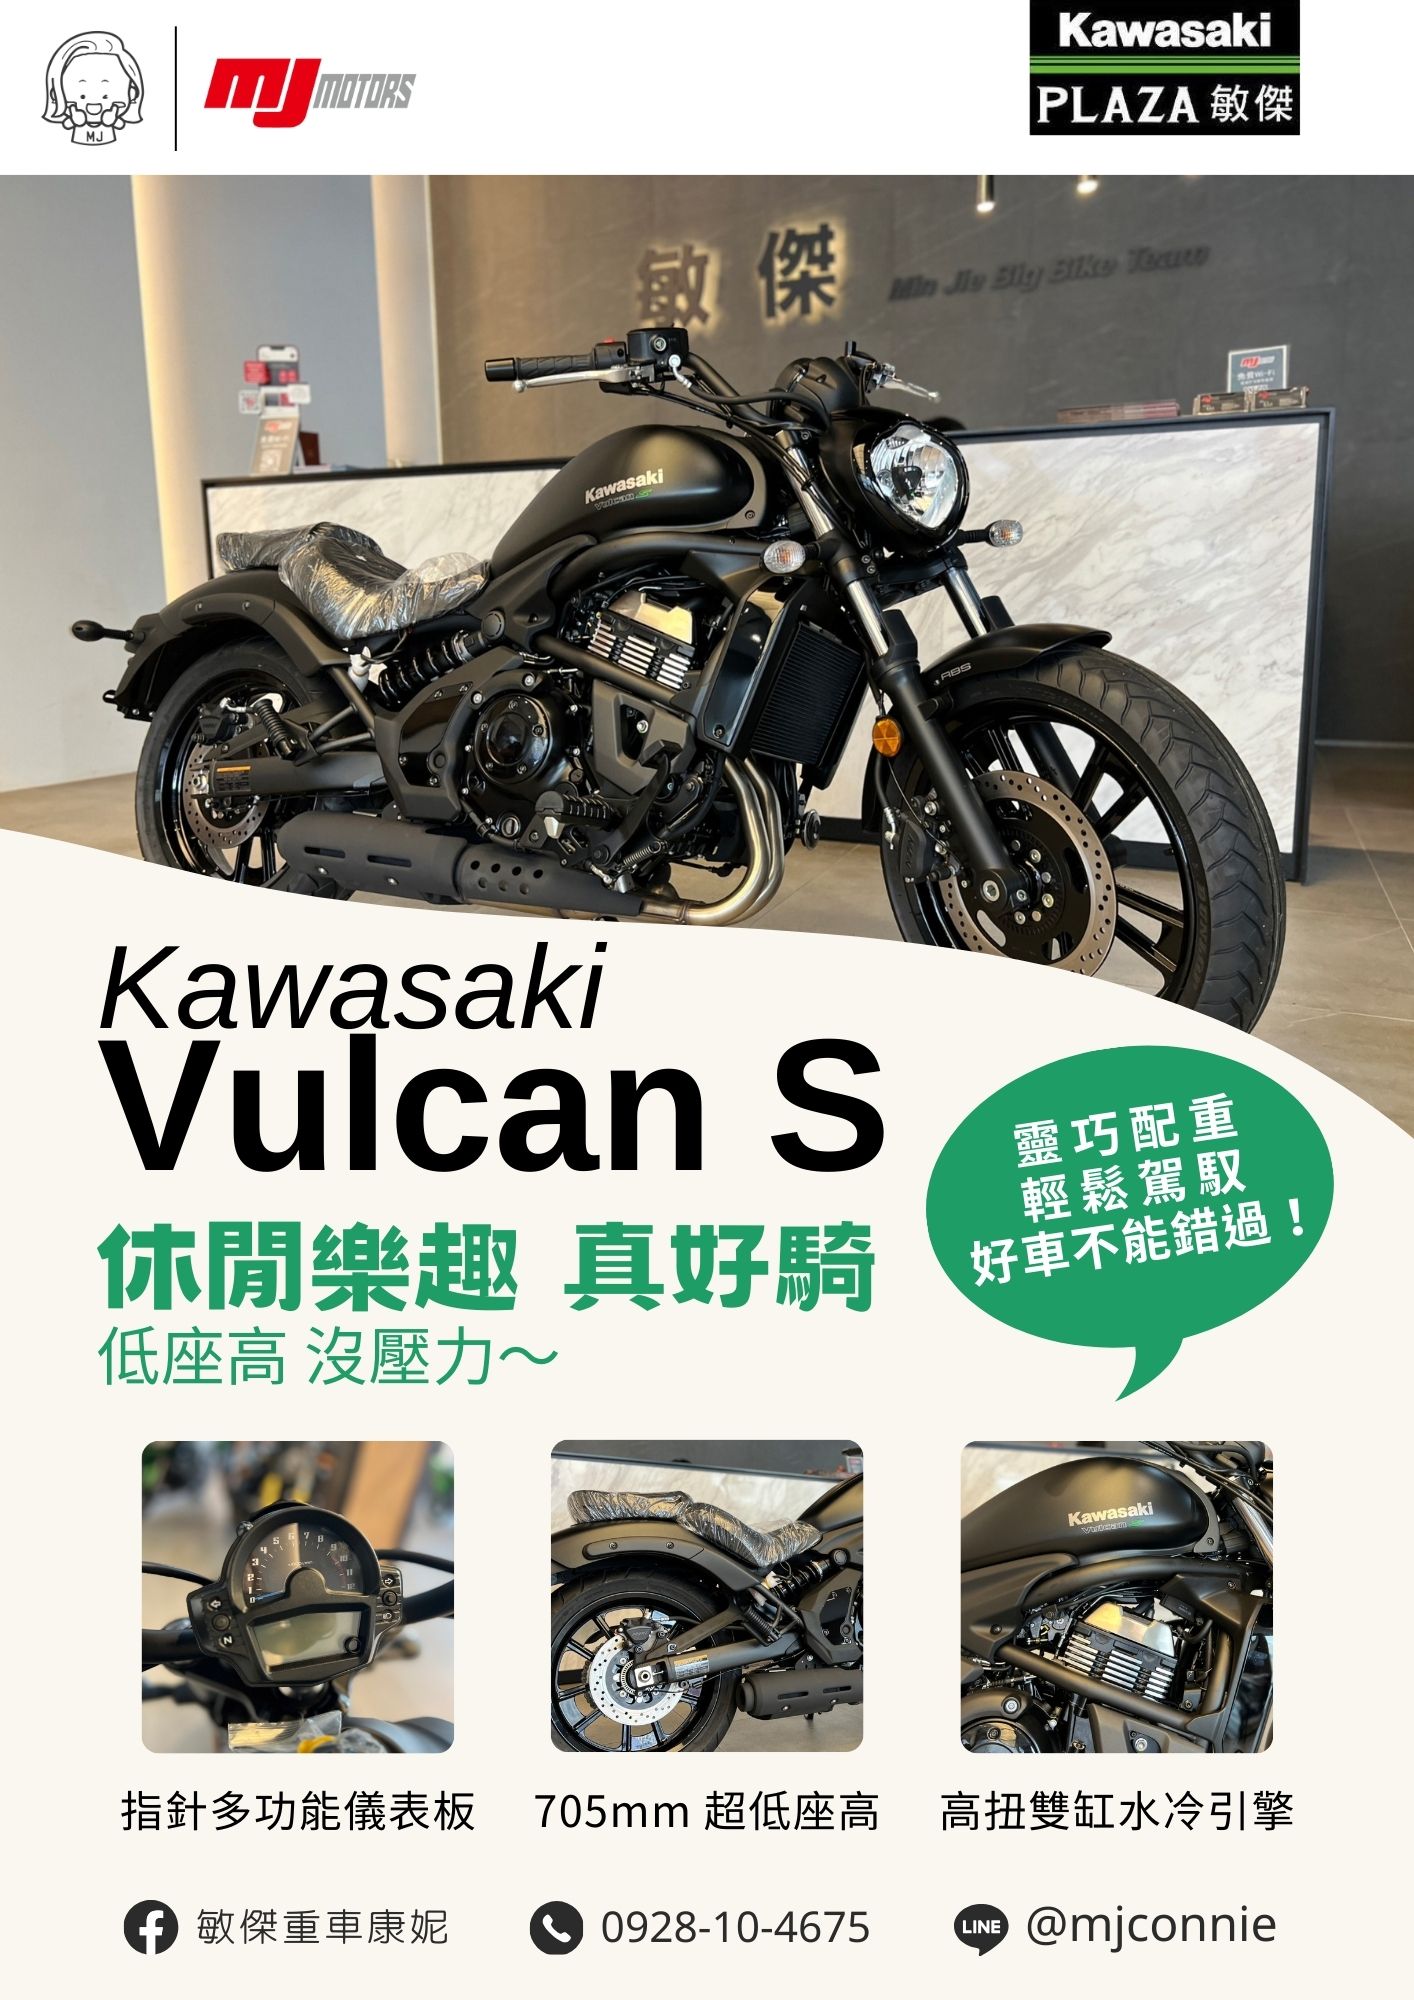 【敏傑車業資深銷售專員 康妮 Connie】KAWASAKI VULCAN S - 「Webike-摩托車市」 『敏傑康妮』Kawasaki Vulcan S 超低坐高 雙腳可平踩 坐姿直挺~短途長途都滿意! 圓夢~敏傑給您最佳體驗